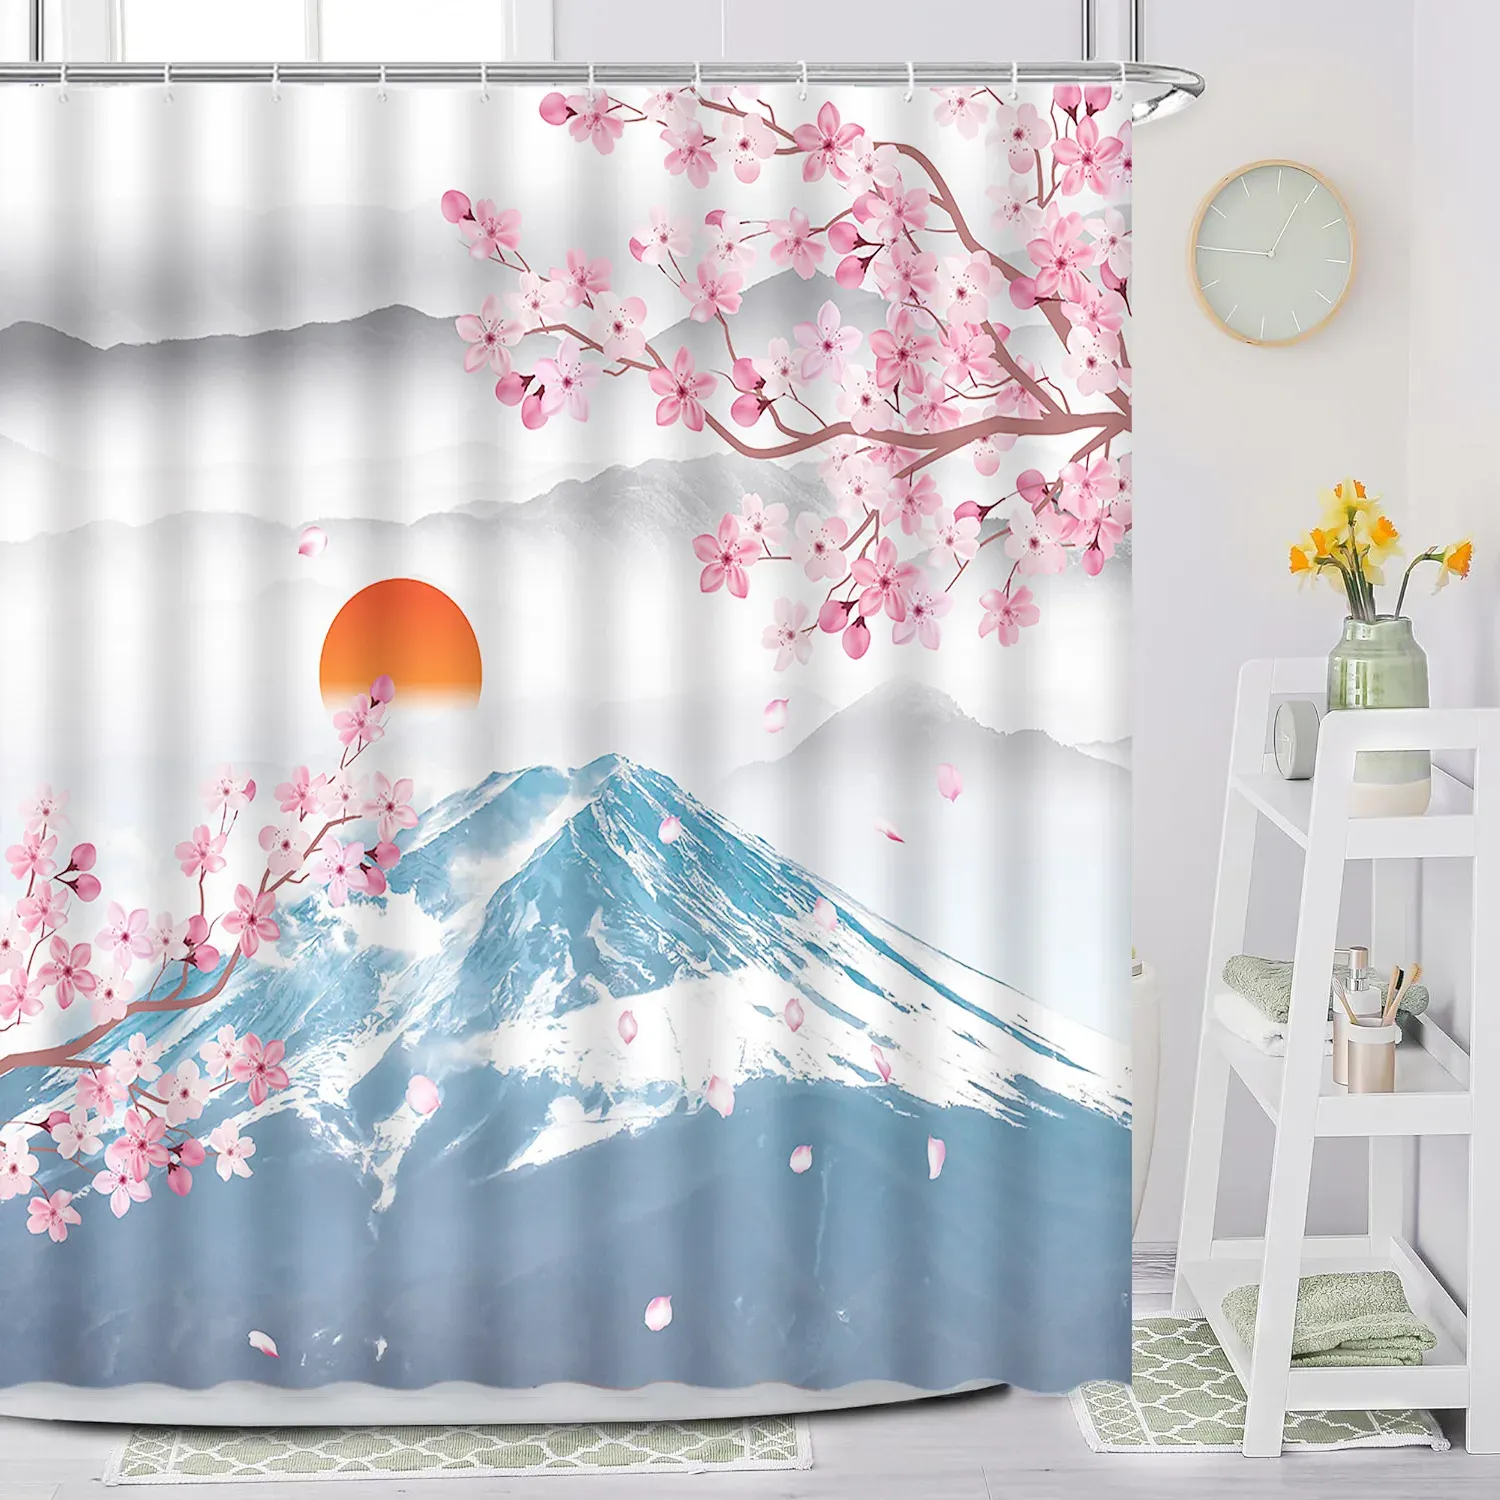 Tervato per la doccia giapponese.Pittura a inchiostro tradizionale plum fiore blossom alpino uccello monte fuji solare rosso solare di ciliegia koi decorazioni da bagno koi